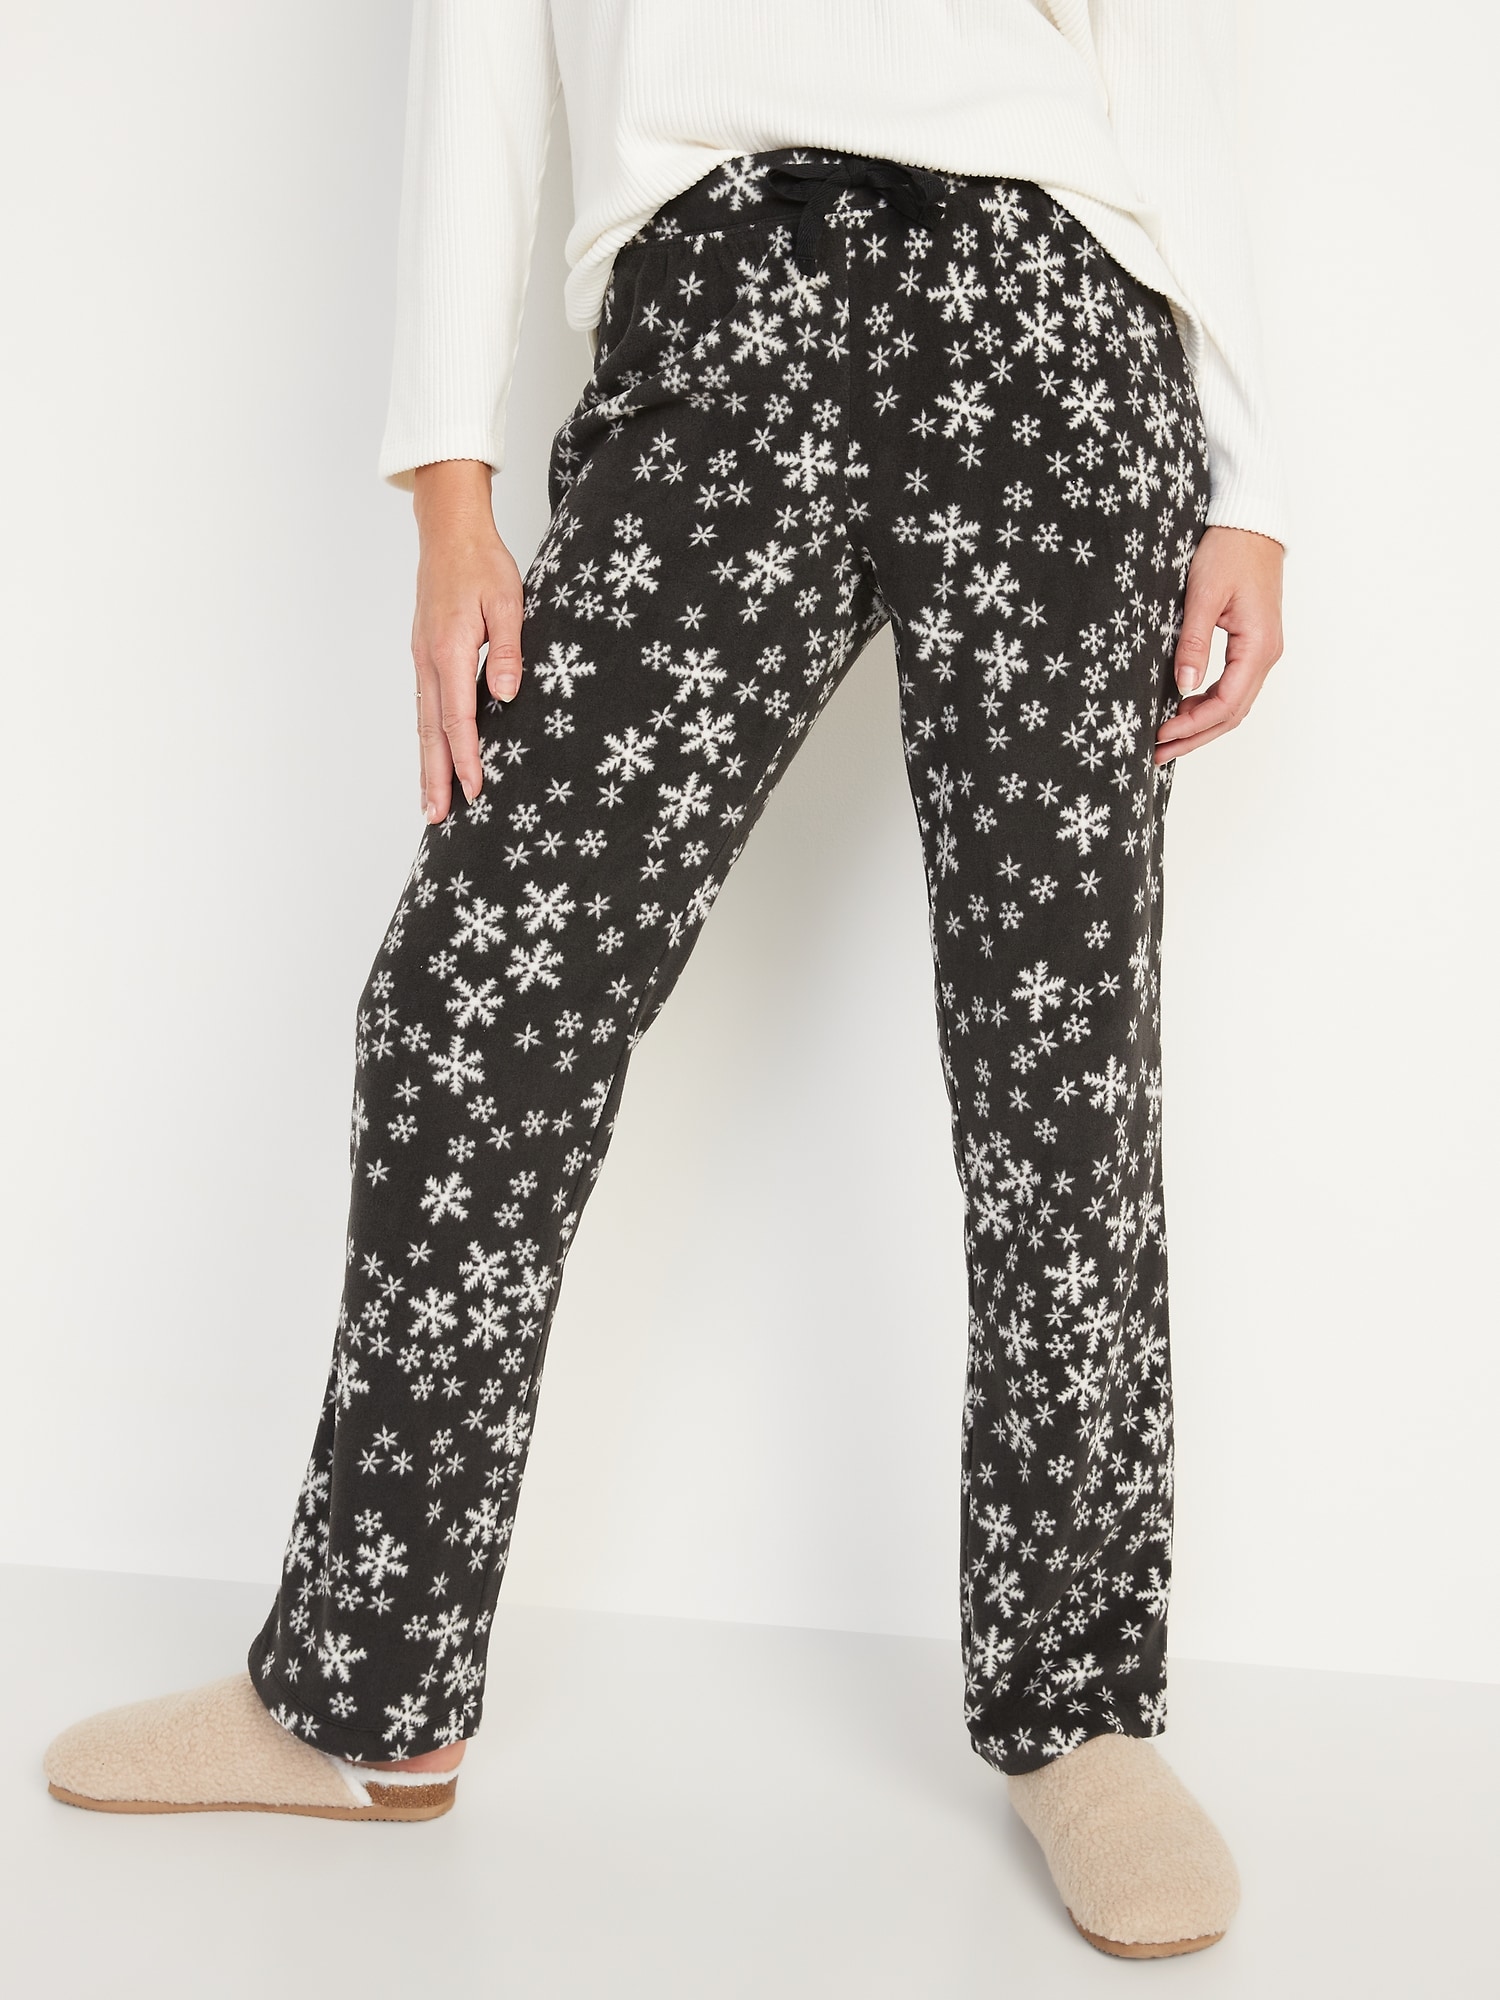 Matching Printed Microfleece Pajama Pants